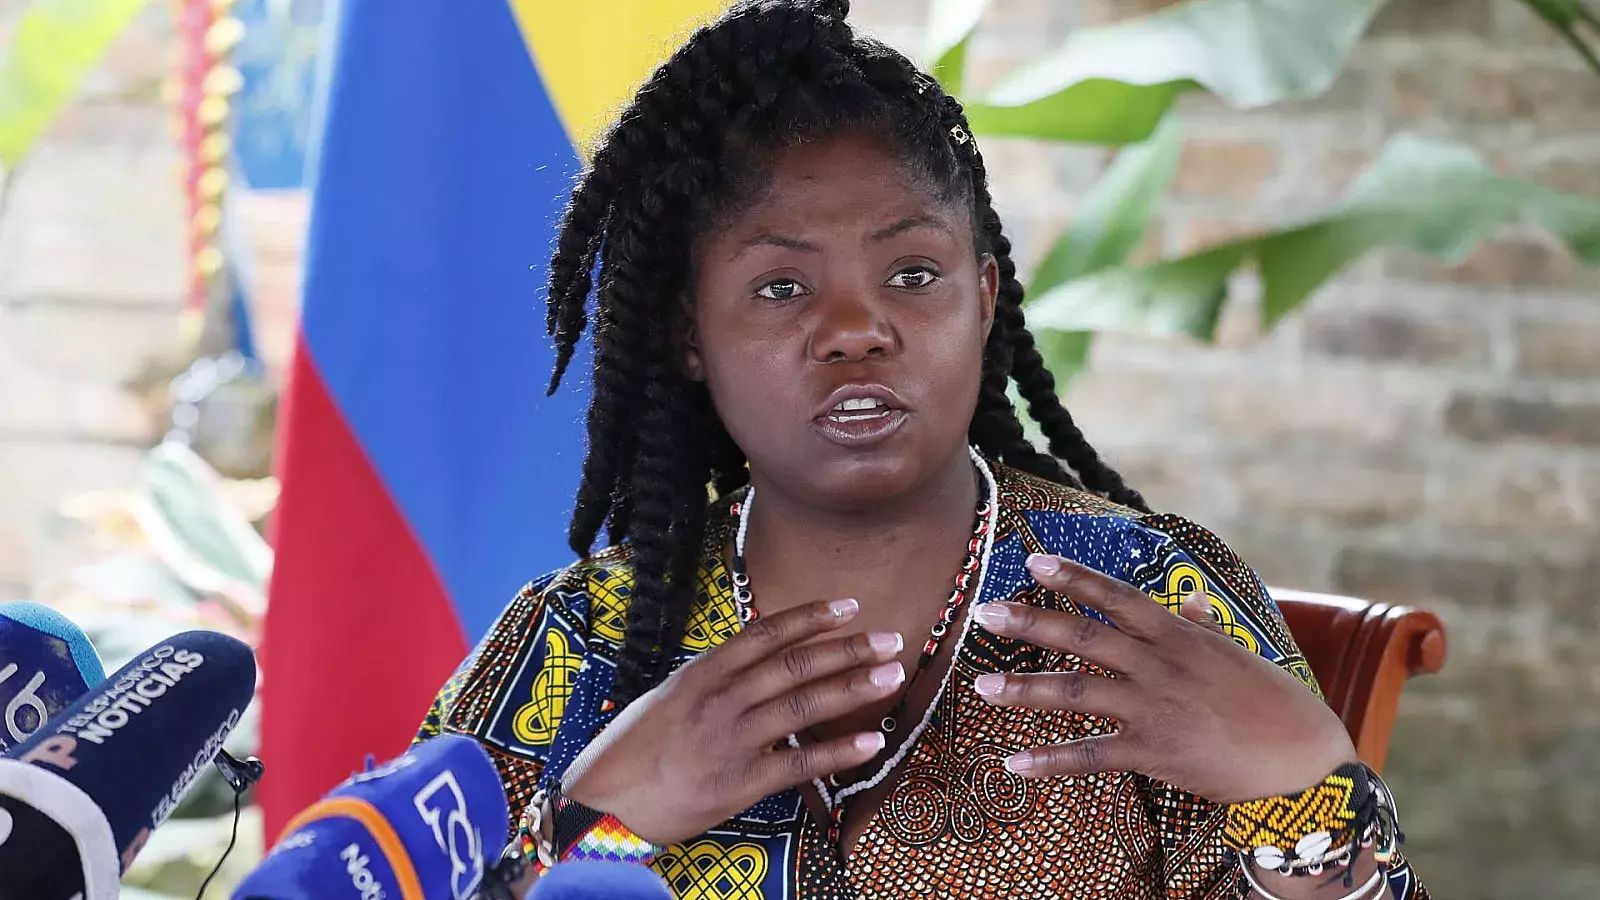 Condenada una mujer por insultar a vicepresidenta de Colombia